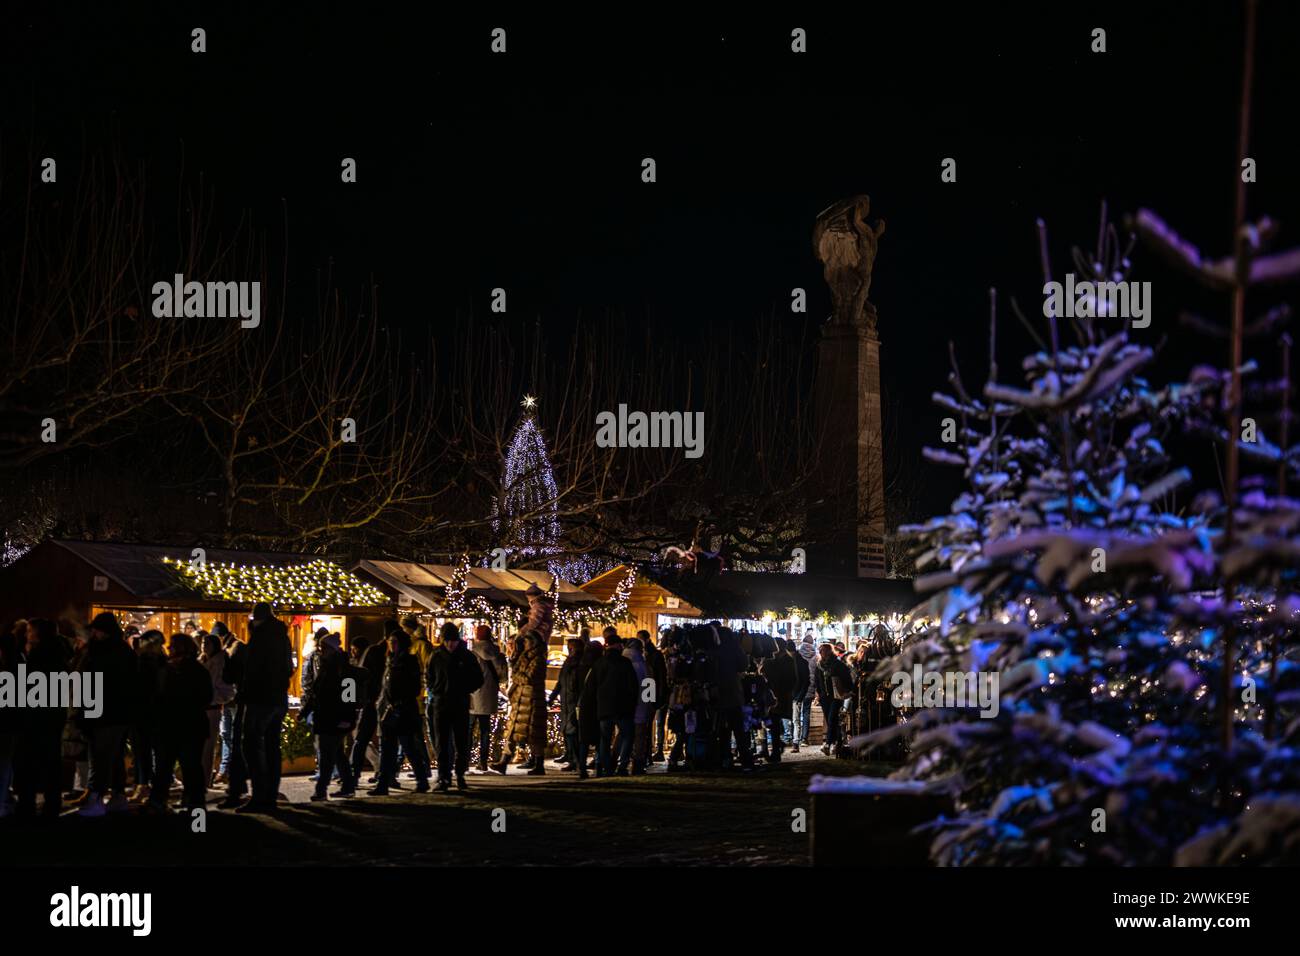 Descrizione: I visitatori del mercatino di Natale camminano lungo le bancarelle e godono dell'atmosfera invernale con la neve sugli alberi. Costanza (Costanza), Lak Foto Stock